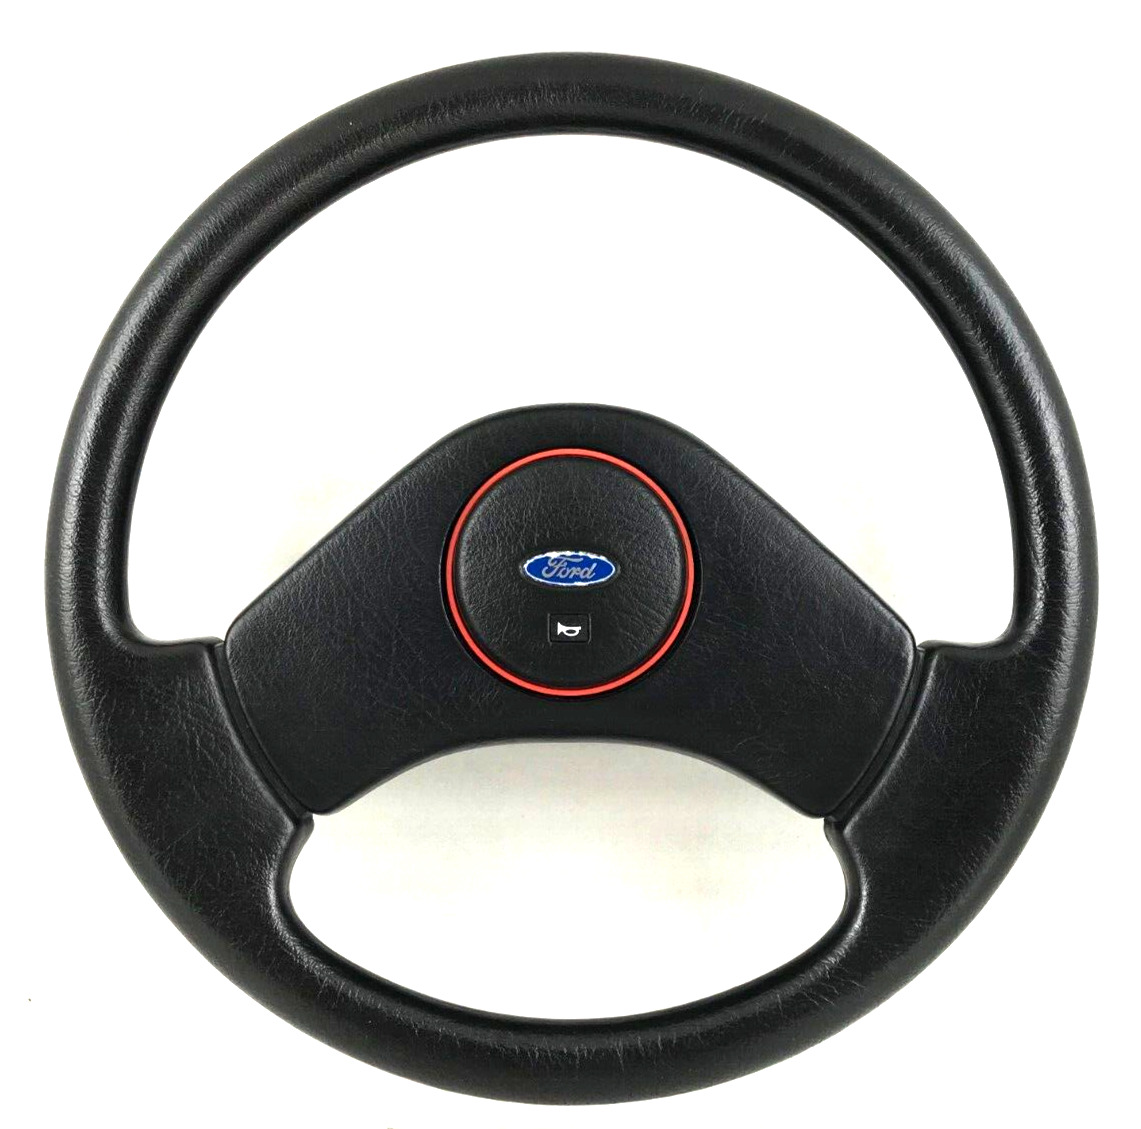 Genuine Ford Sierra XR4i steering wheel. Mercury Merkur XR4Ti. SUPERB 4D